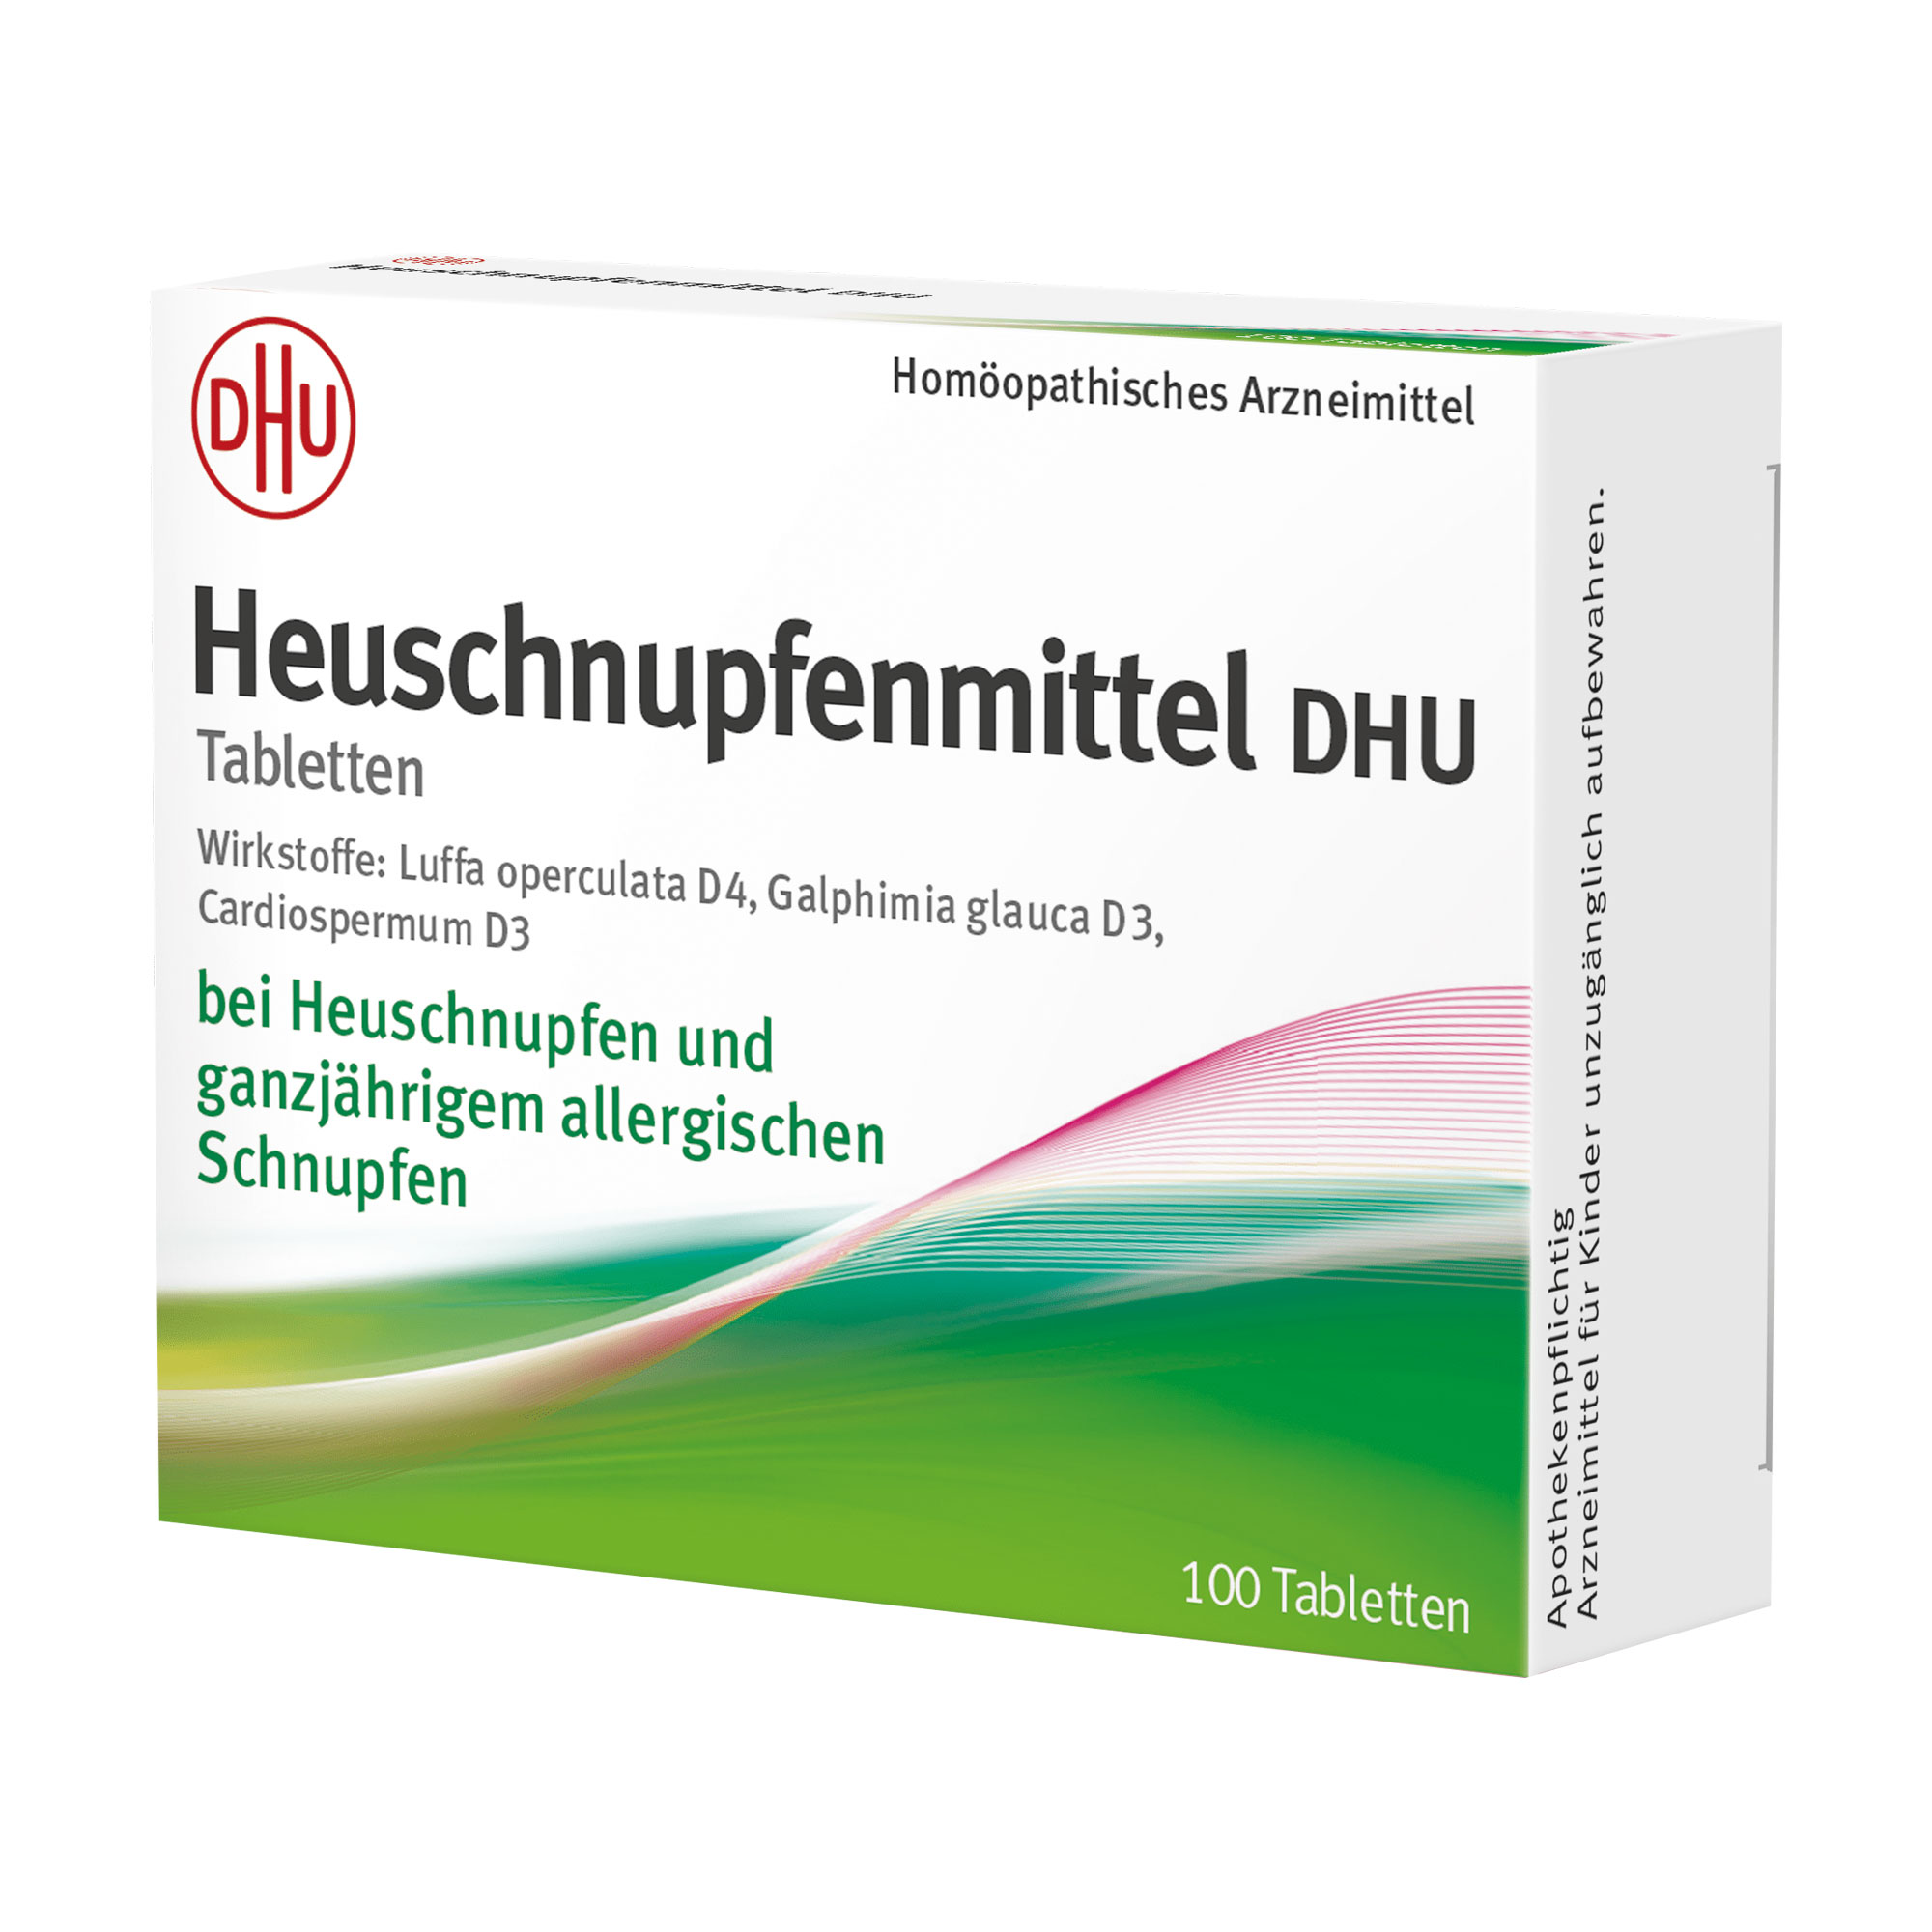 Homöopathisches Arzneimittel bei Erkrankung der Atemwege.